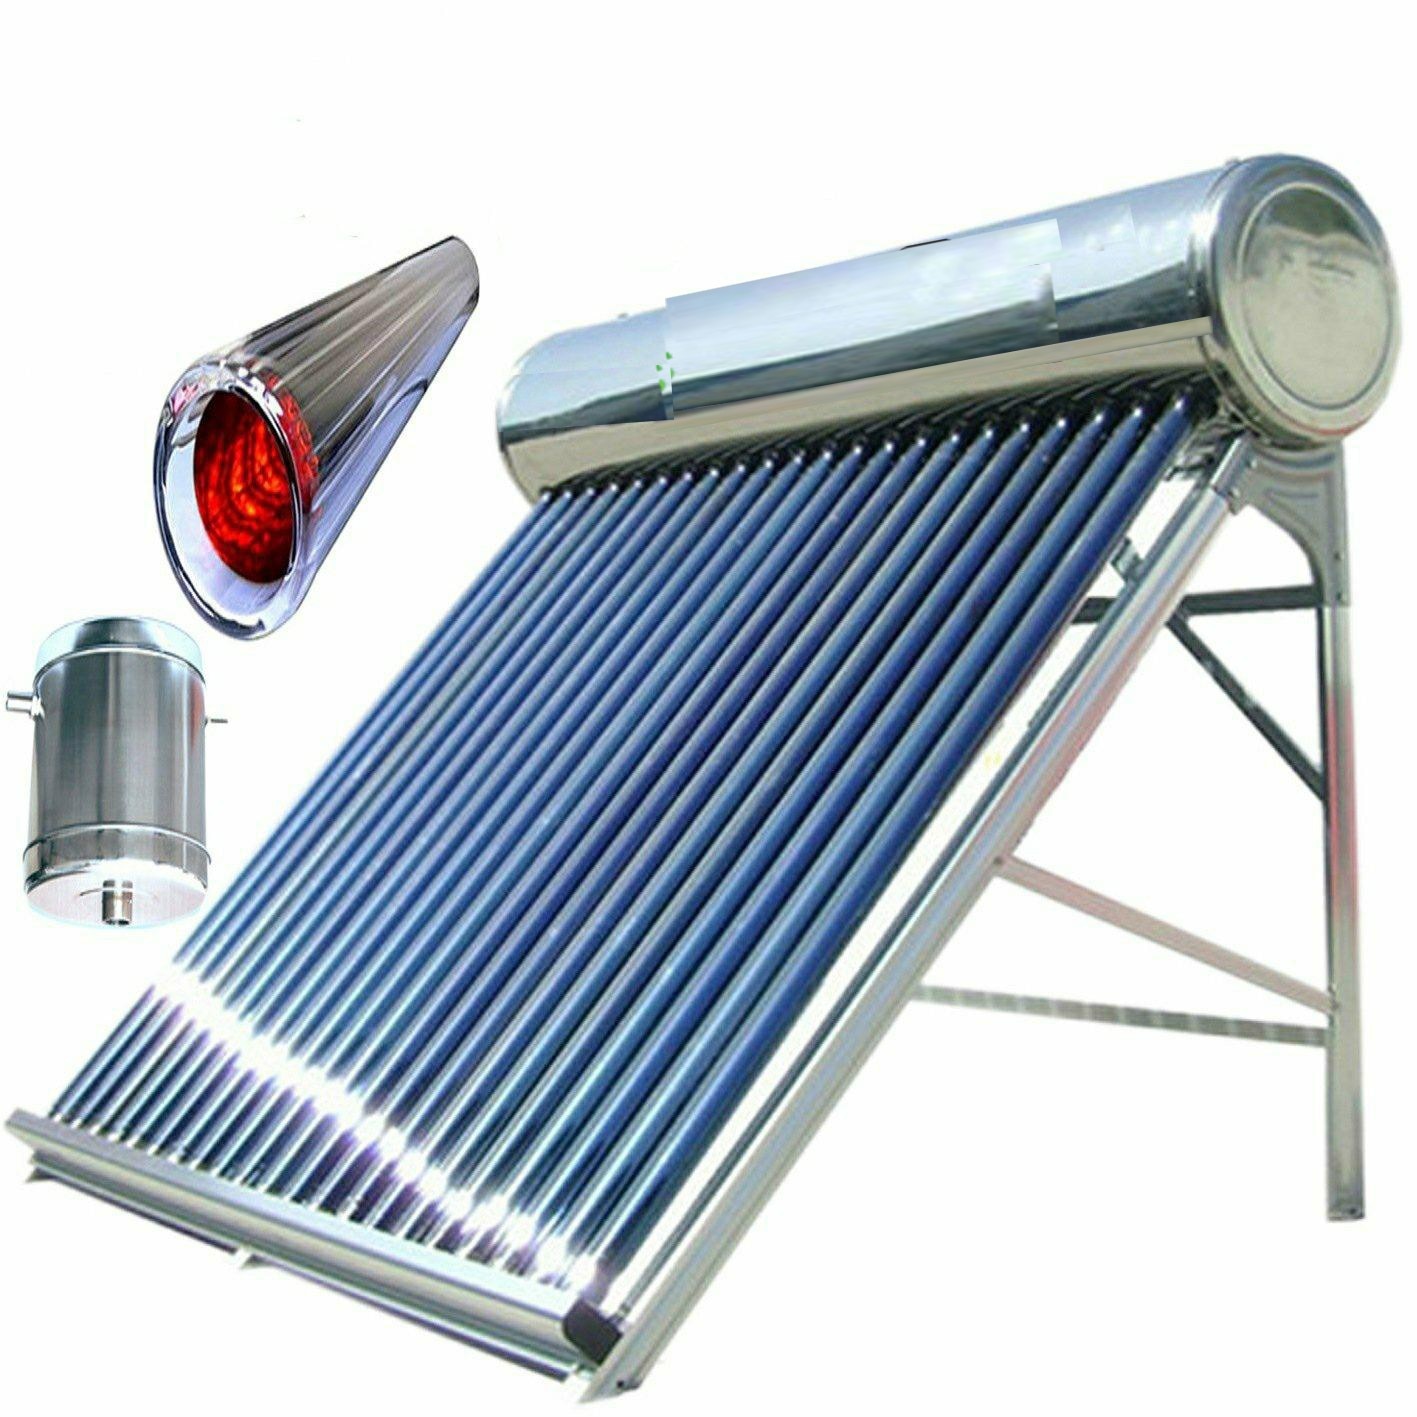 Нагреватель горячей воды. Солнечные водонагреватель (Солнечный гелиоколлектор). Солнечный водонагреватель 200л. Солнечный водонагреватель Royal 200 л. Вакуумный трубчатый Солнечный коллектор (SHC).